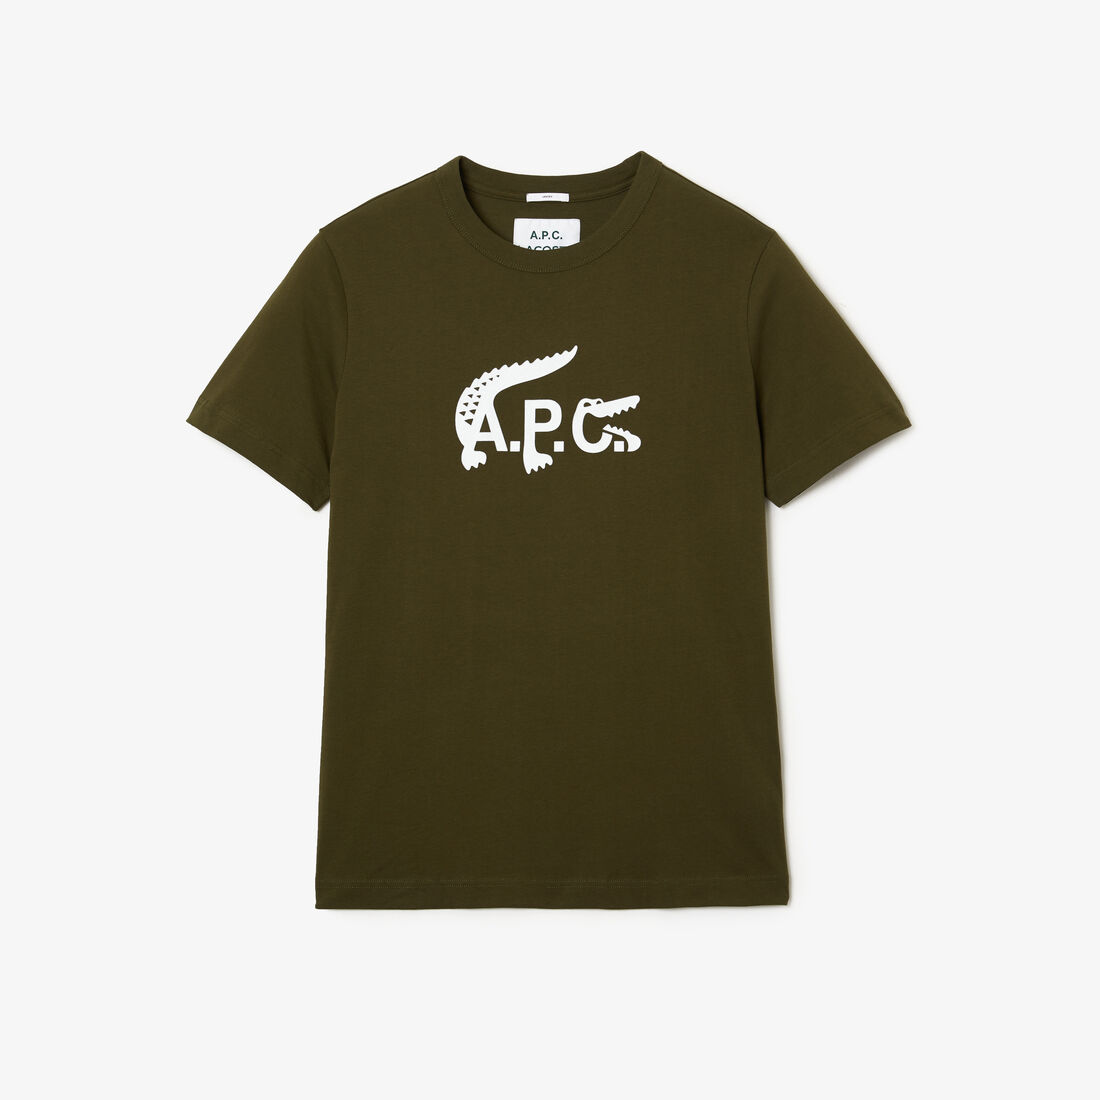 Lacoste X A.p.c. Jersey T-shirts Herren Braun | VLRZ-13092